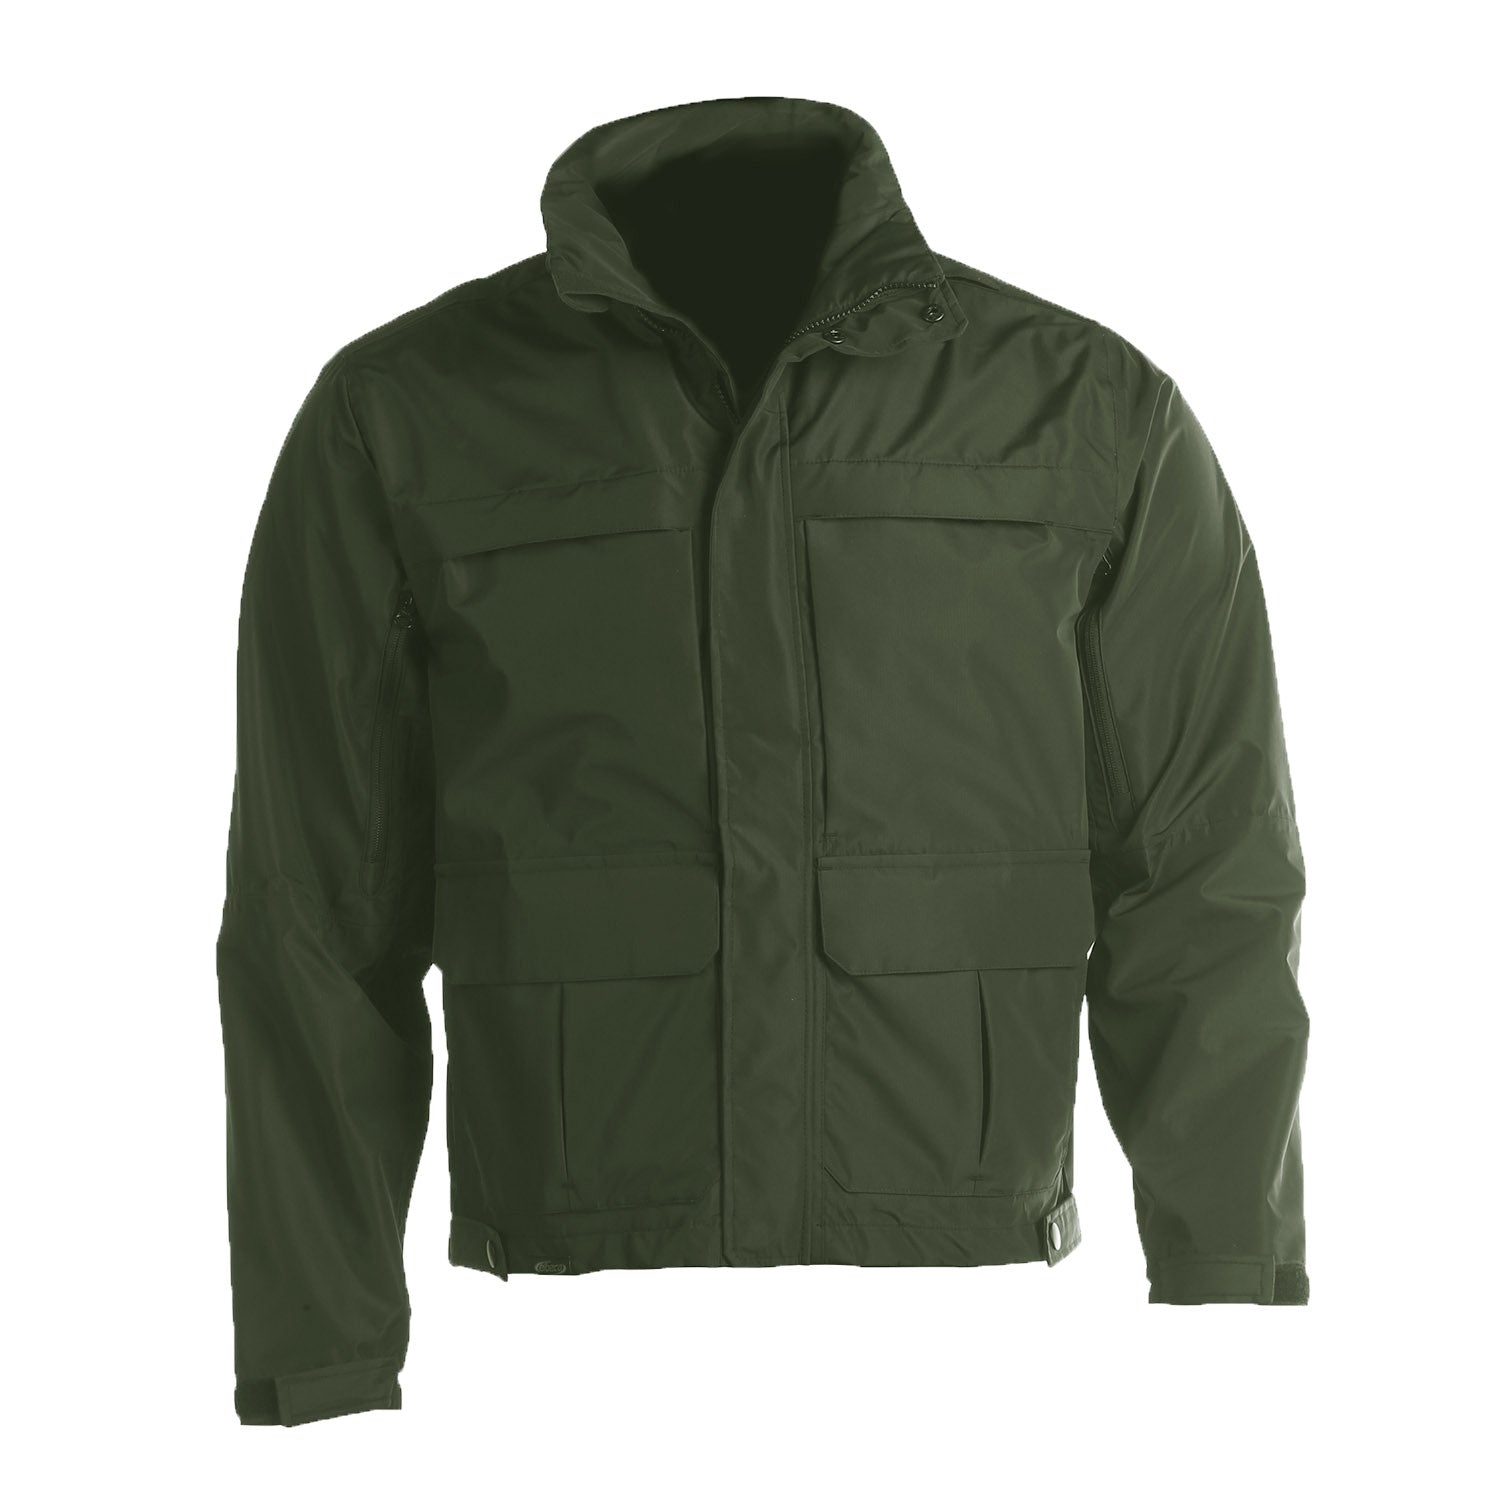 Elbeco Shield Duty Jacket – Security Uniform